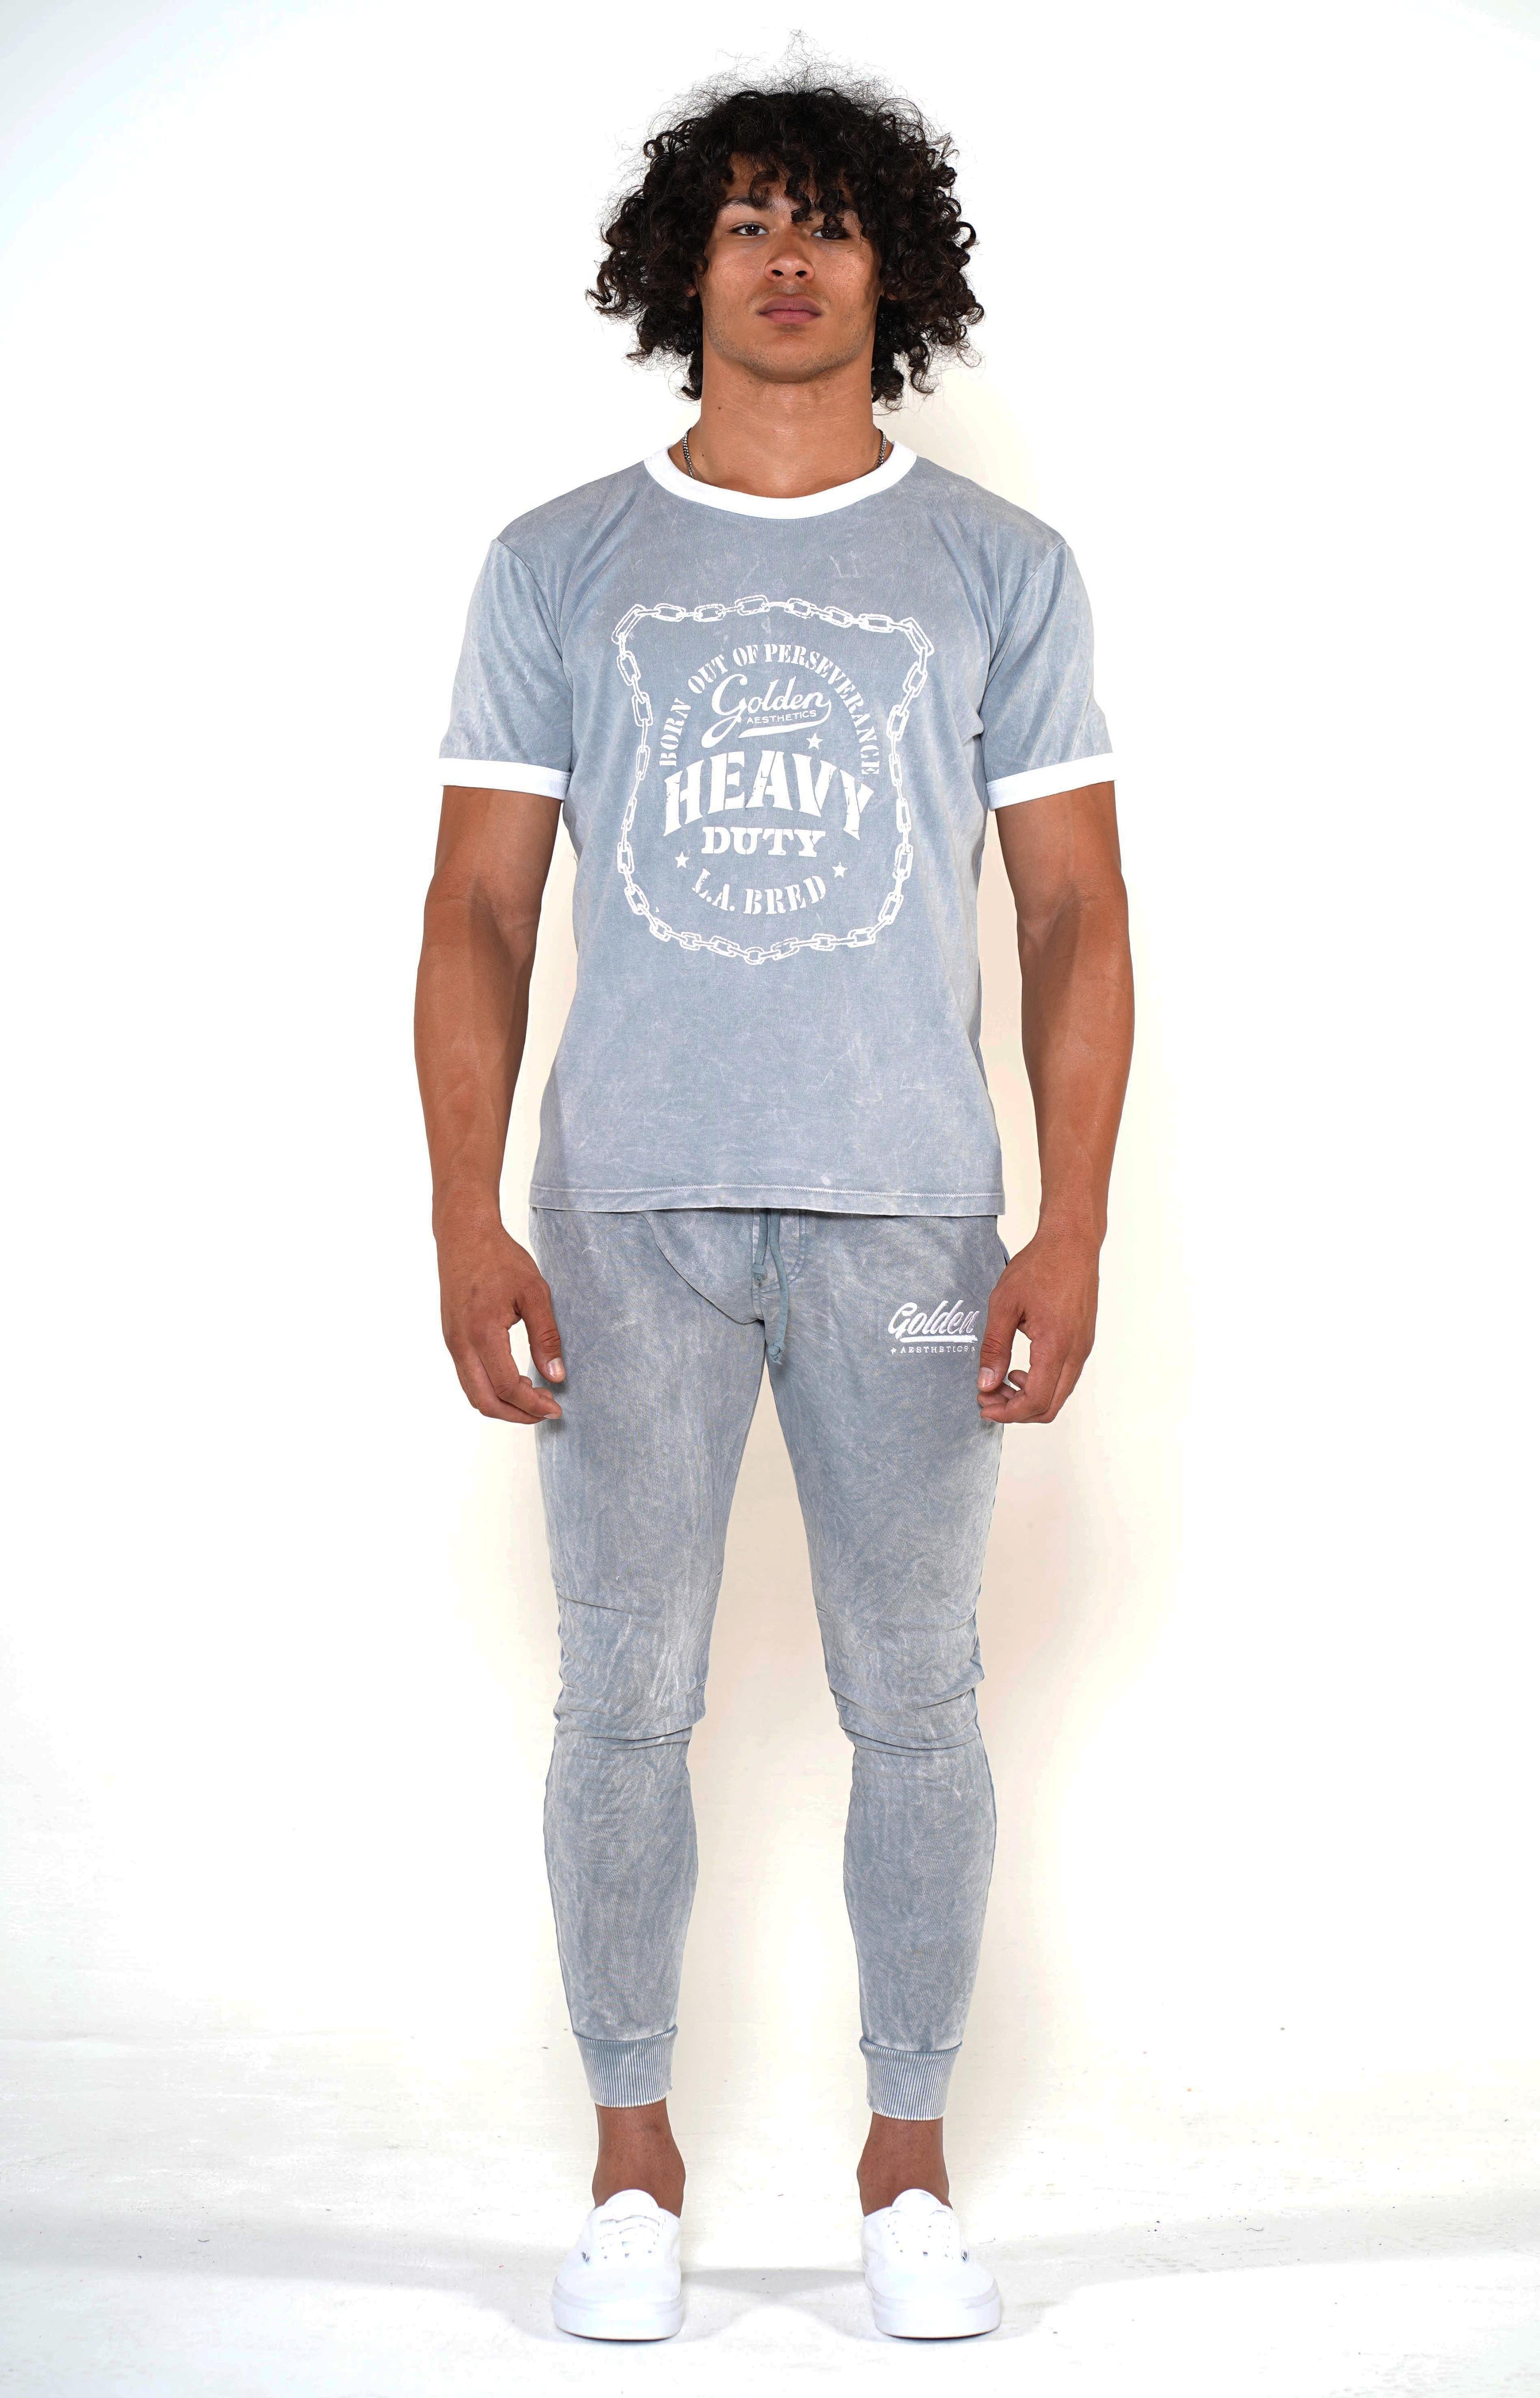 Men's Cool Grey/White Heavy Duty Ringer T-Shirt - Golden Aesthetics